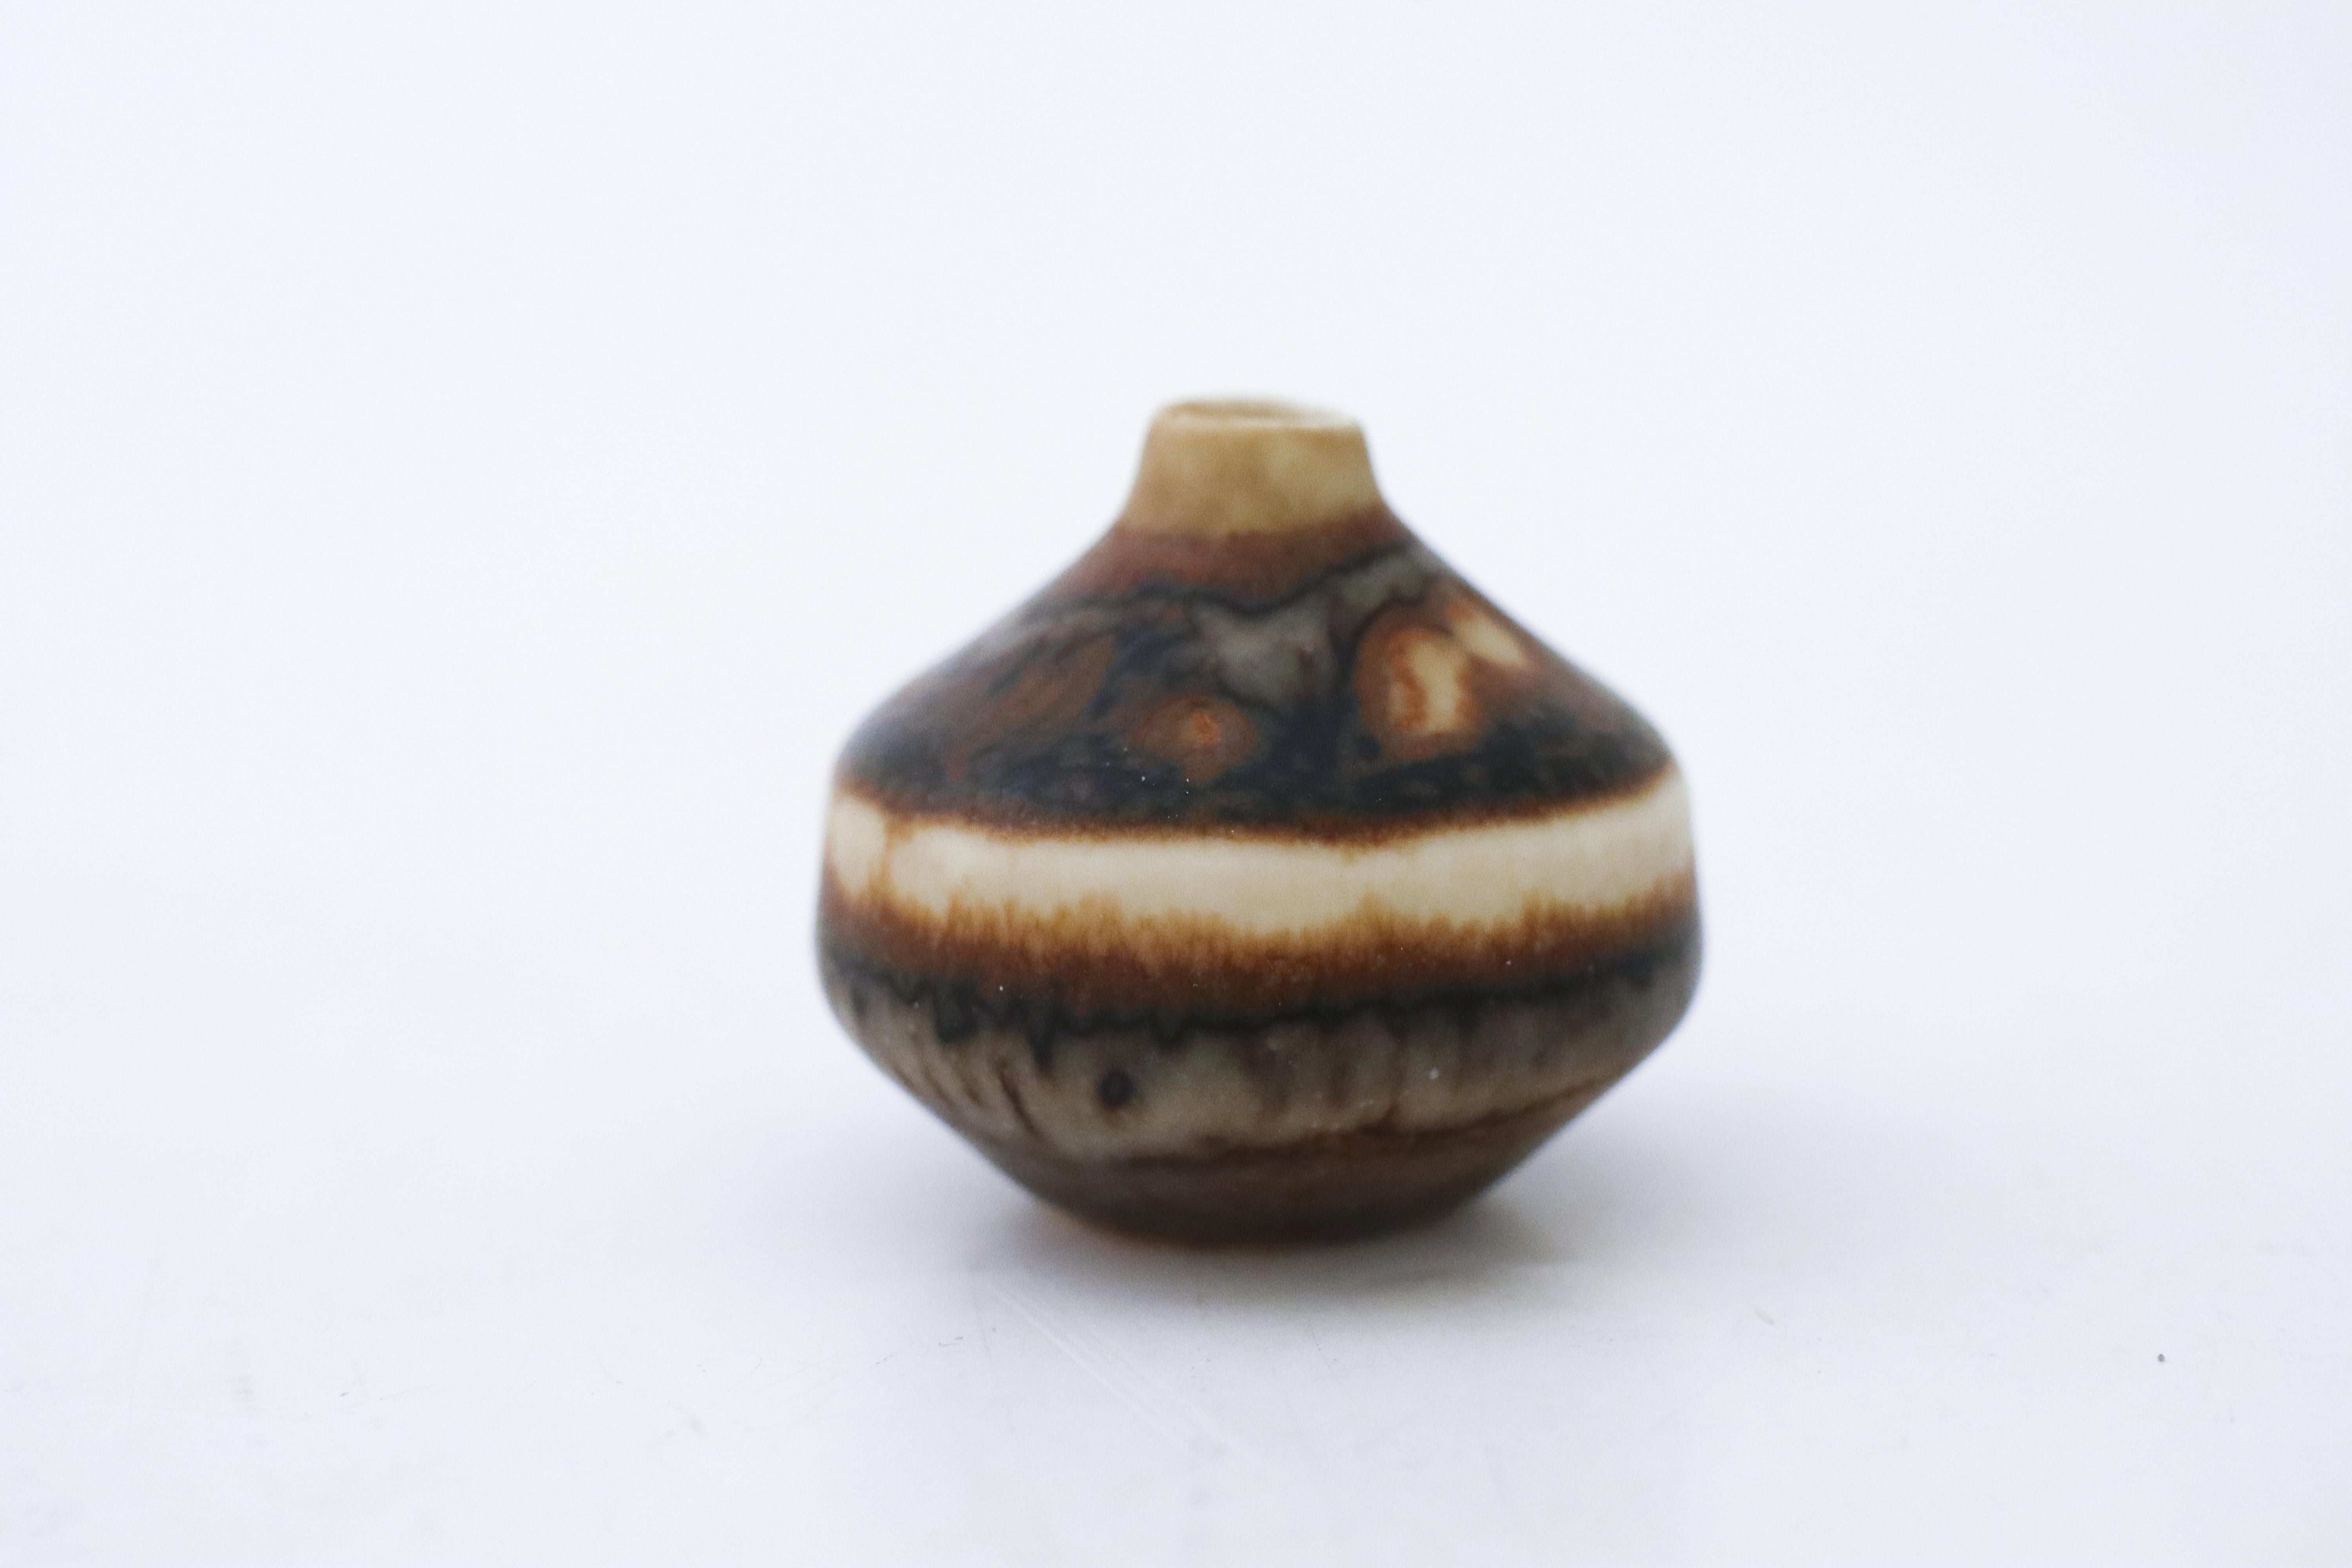 Un vase miniature brun conçu par Carl-Harry Stålhane à Rörstrand, d'une hauteur de 3,5 cm et en très bon état, marqué comme étant de 1ère qualité. 

Carl-Harry Stålhane est l'un des grands noms de la céramique scandinave du milieu du siècle. Il a